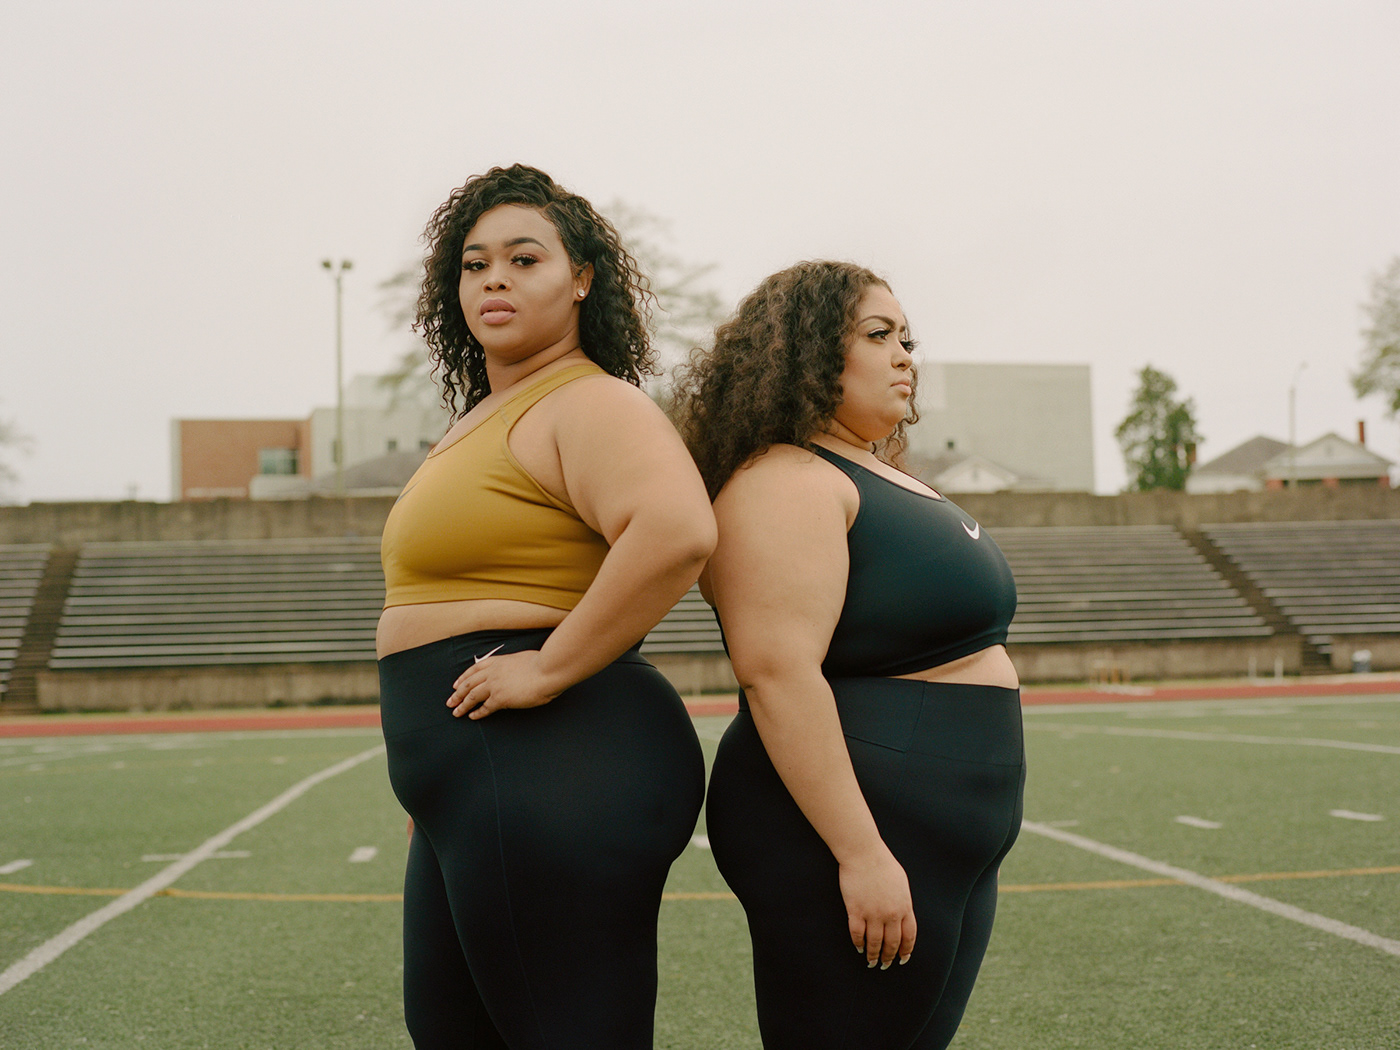 Nike Alabama State HoneyBeez Film   Documentary  body diversity Photography  DANCE   nike sportswear nike women